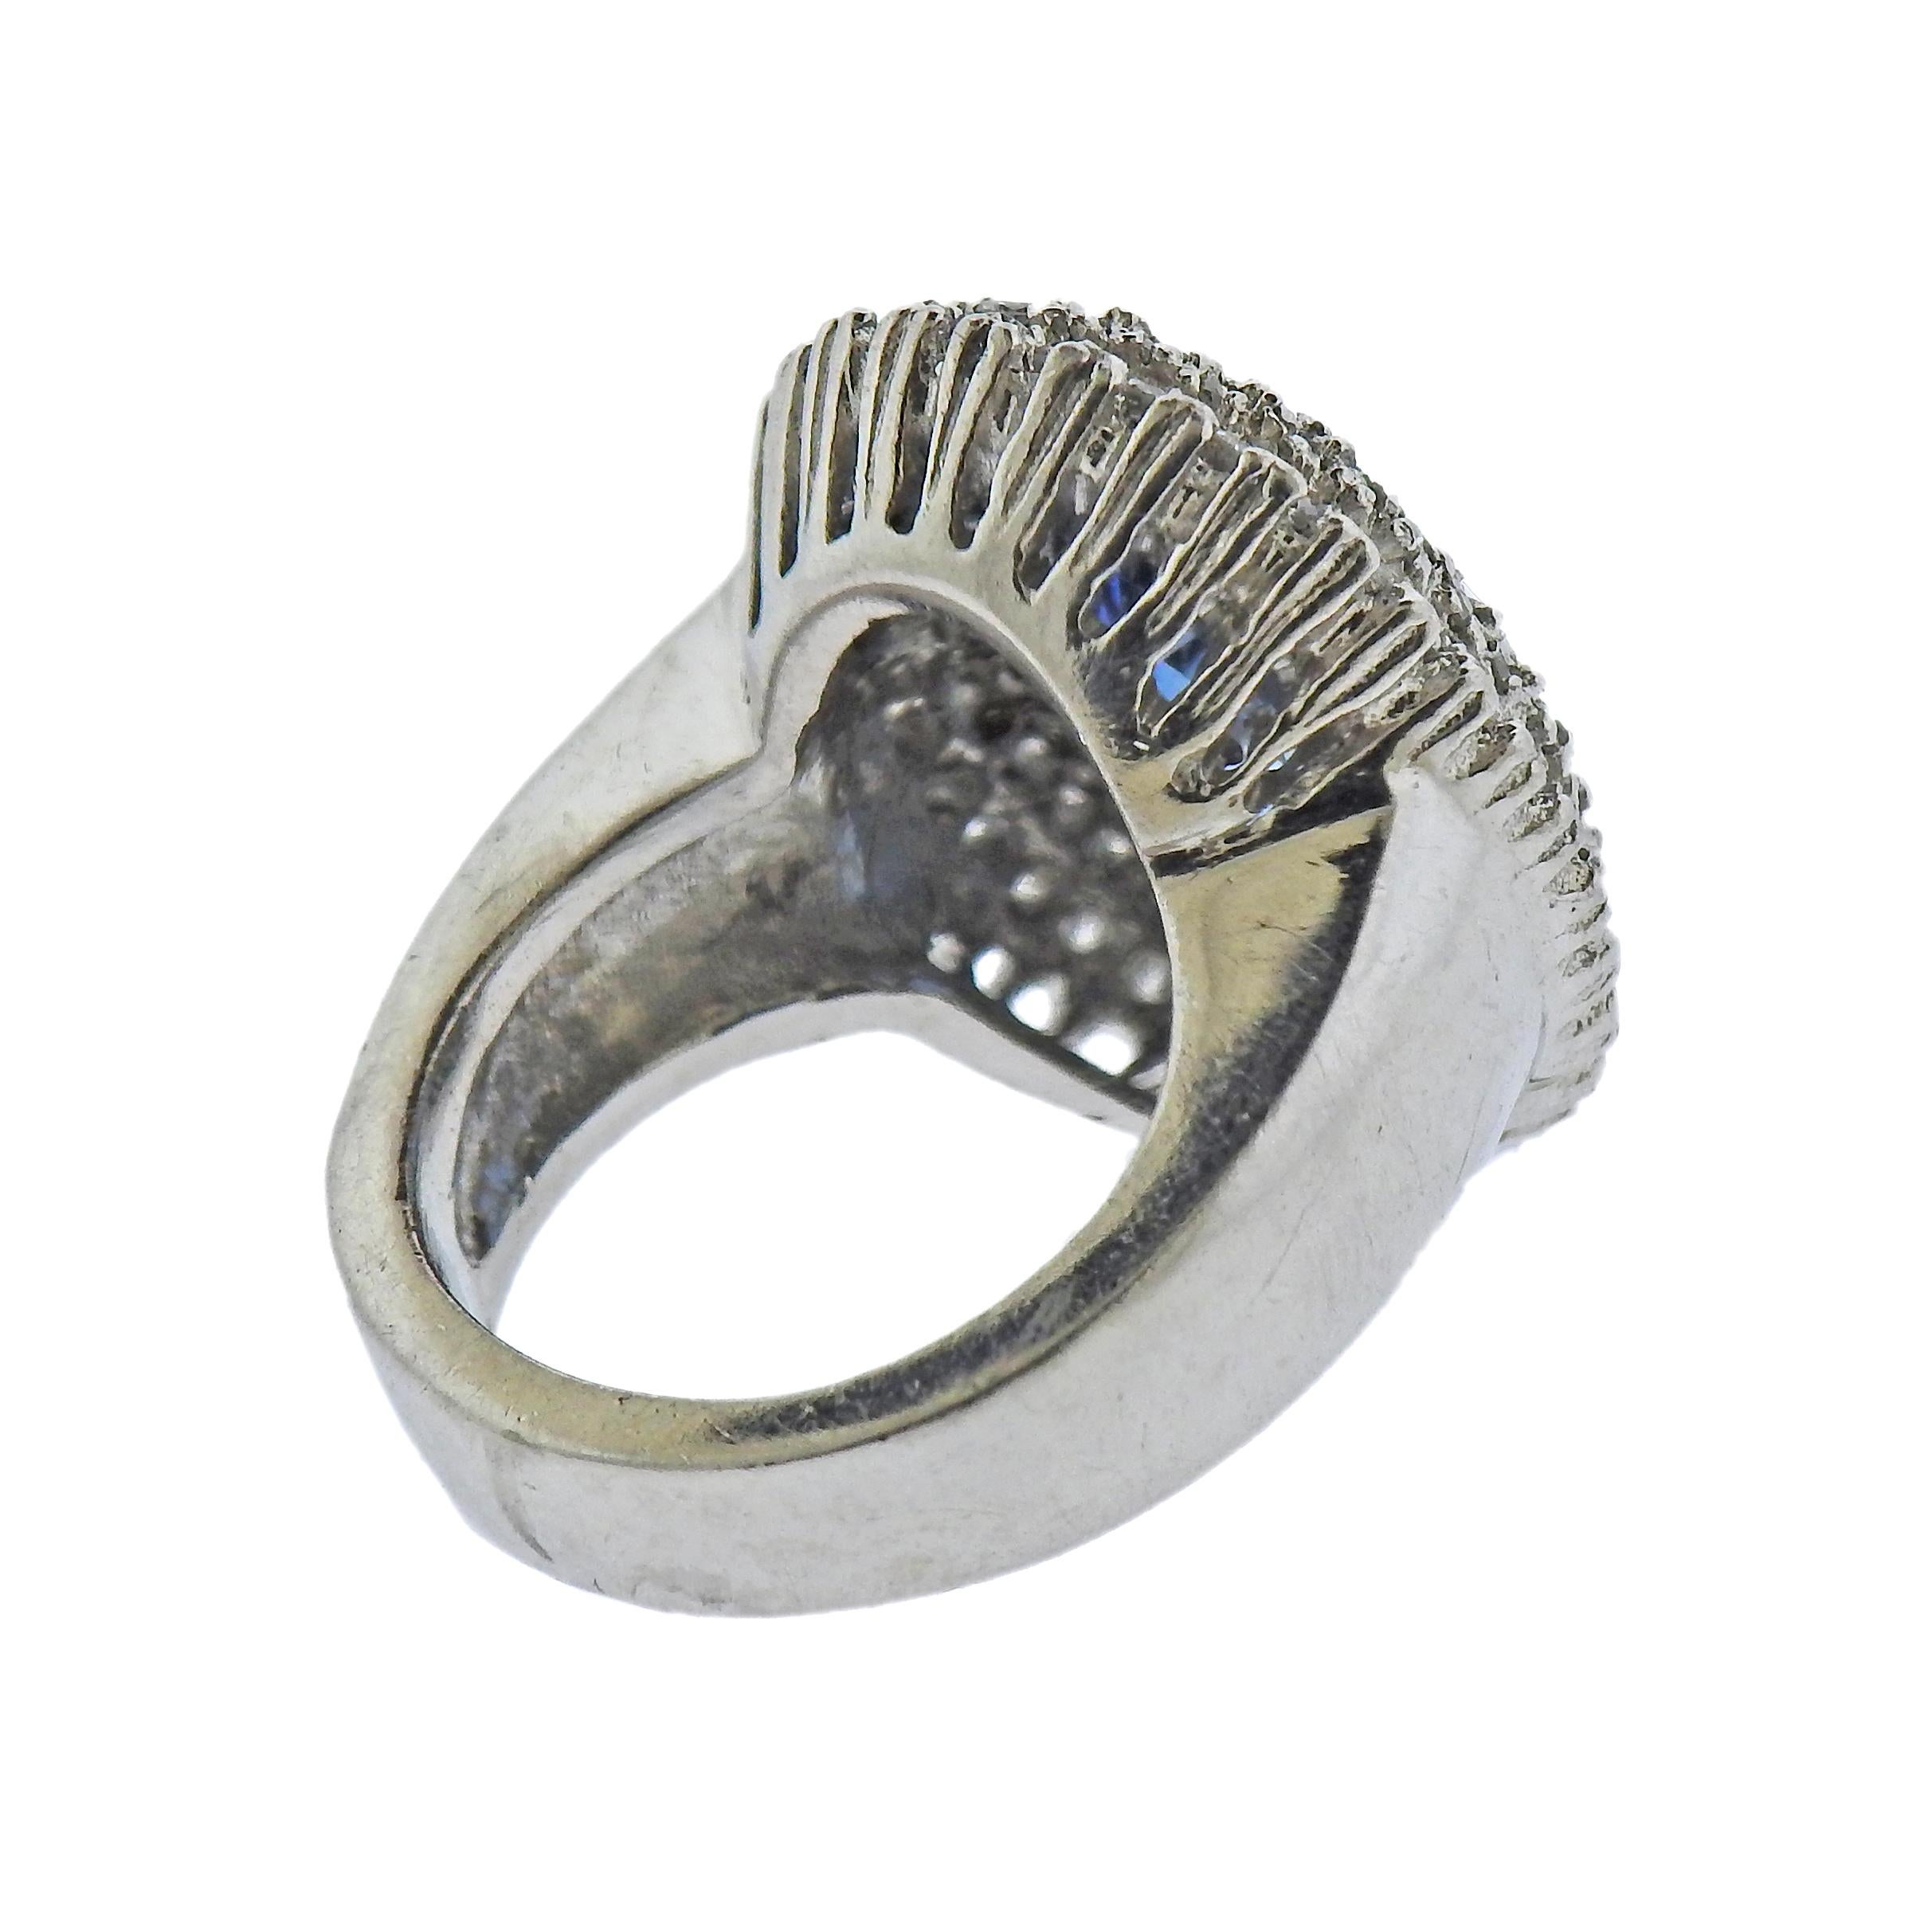 12 carat aquamarine ring